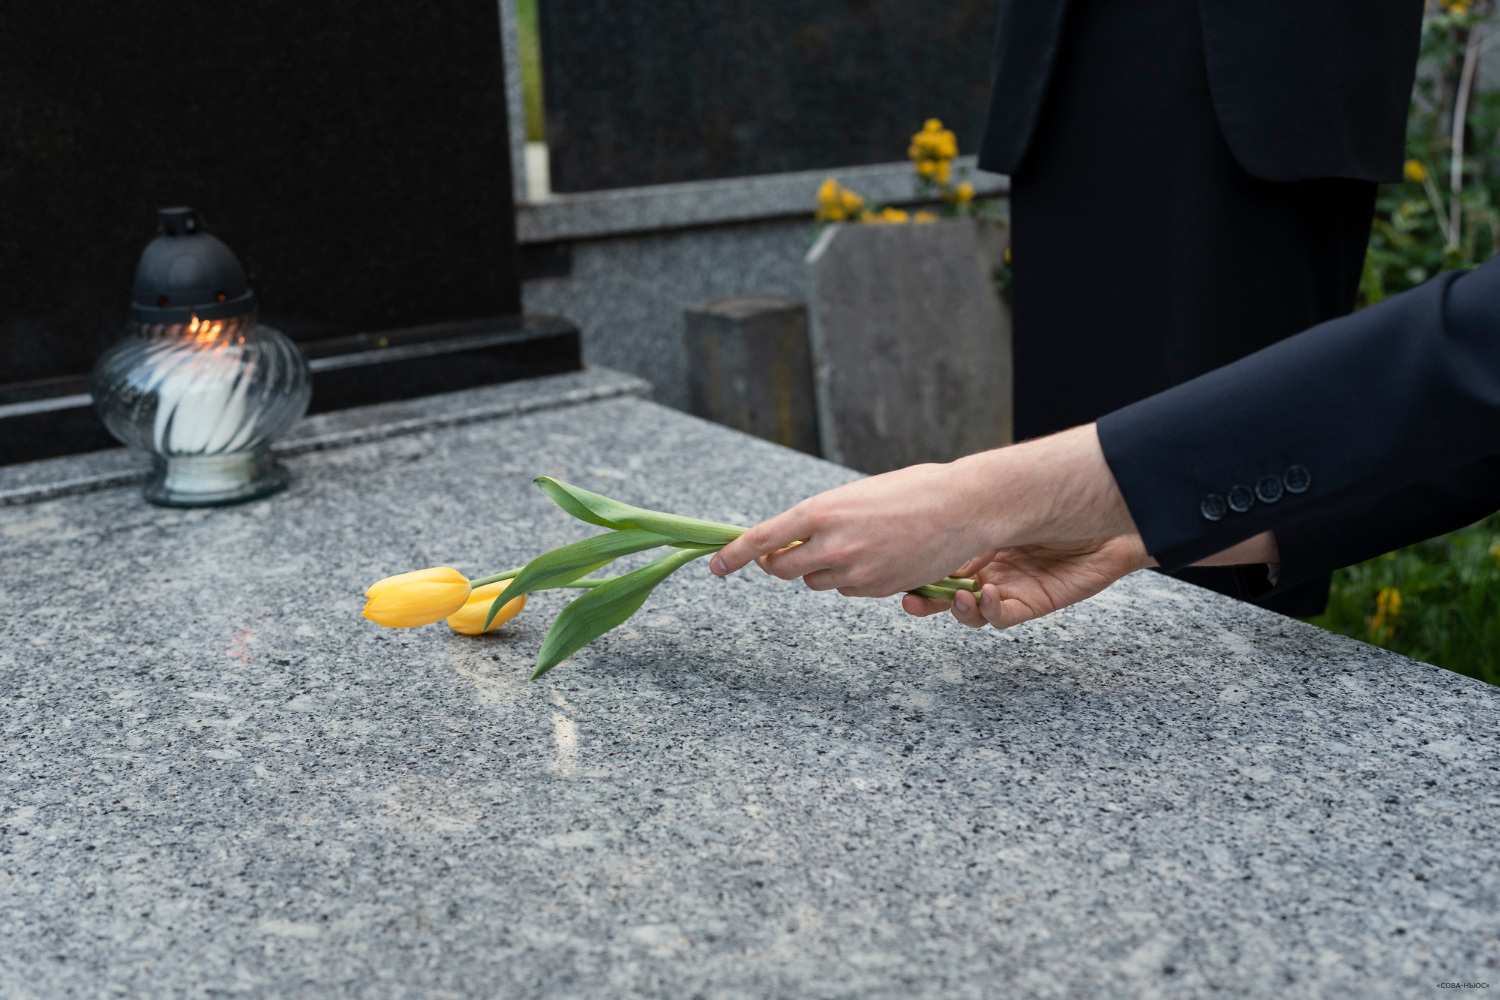 У российского похоронного бизнеса снизились доходы